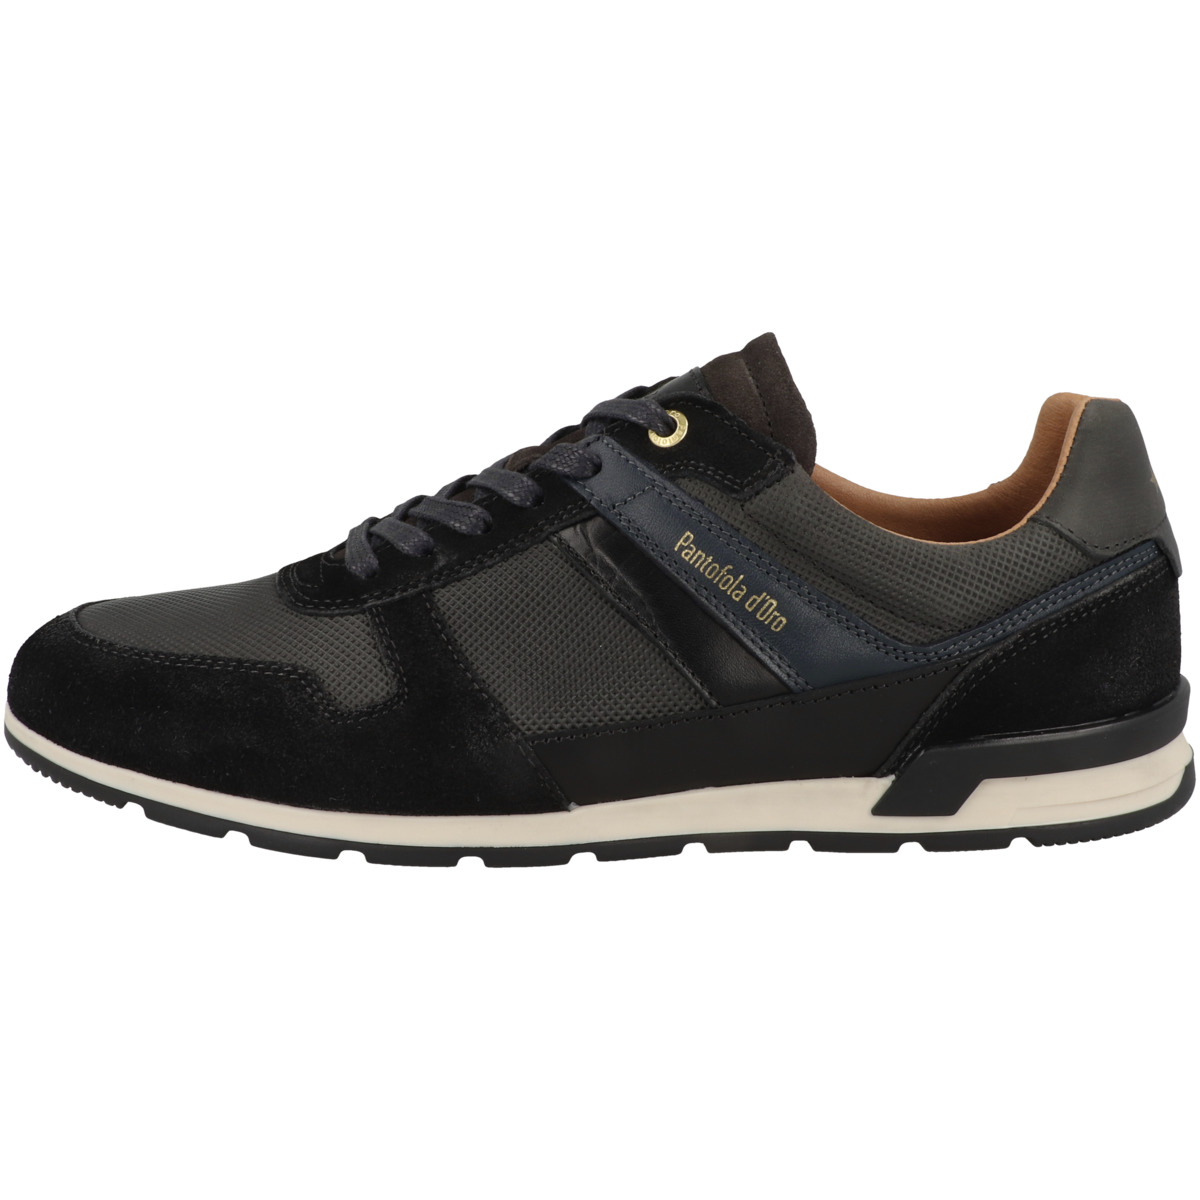 Pantofola d Oro Taranto Uomo Low Sneaker schwarz